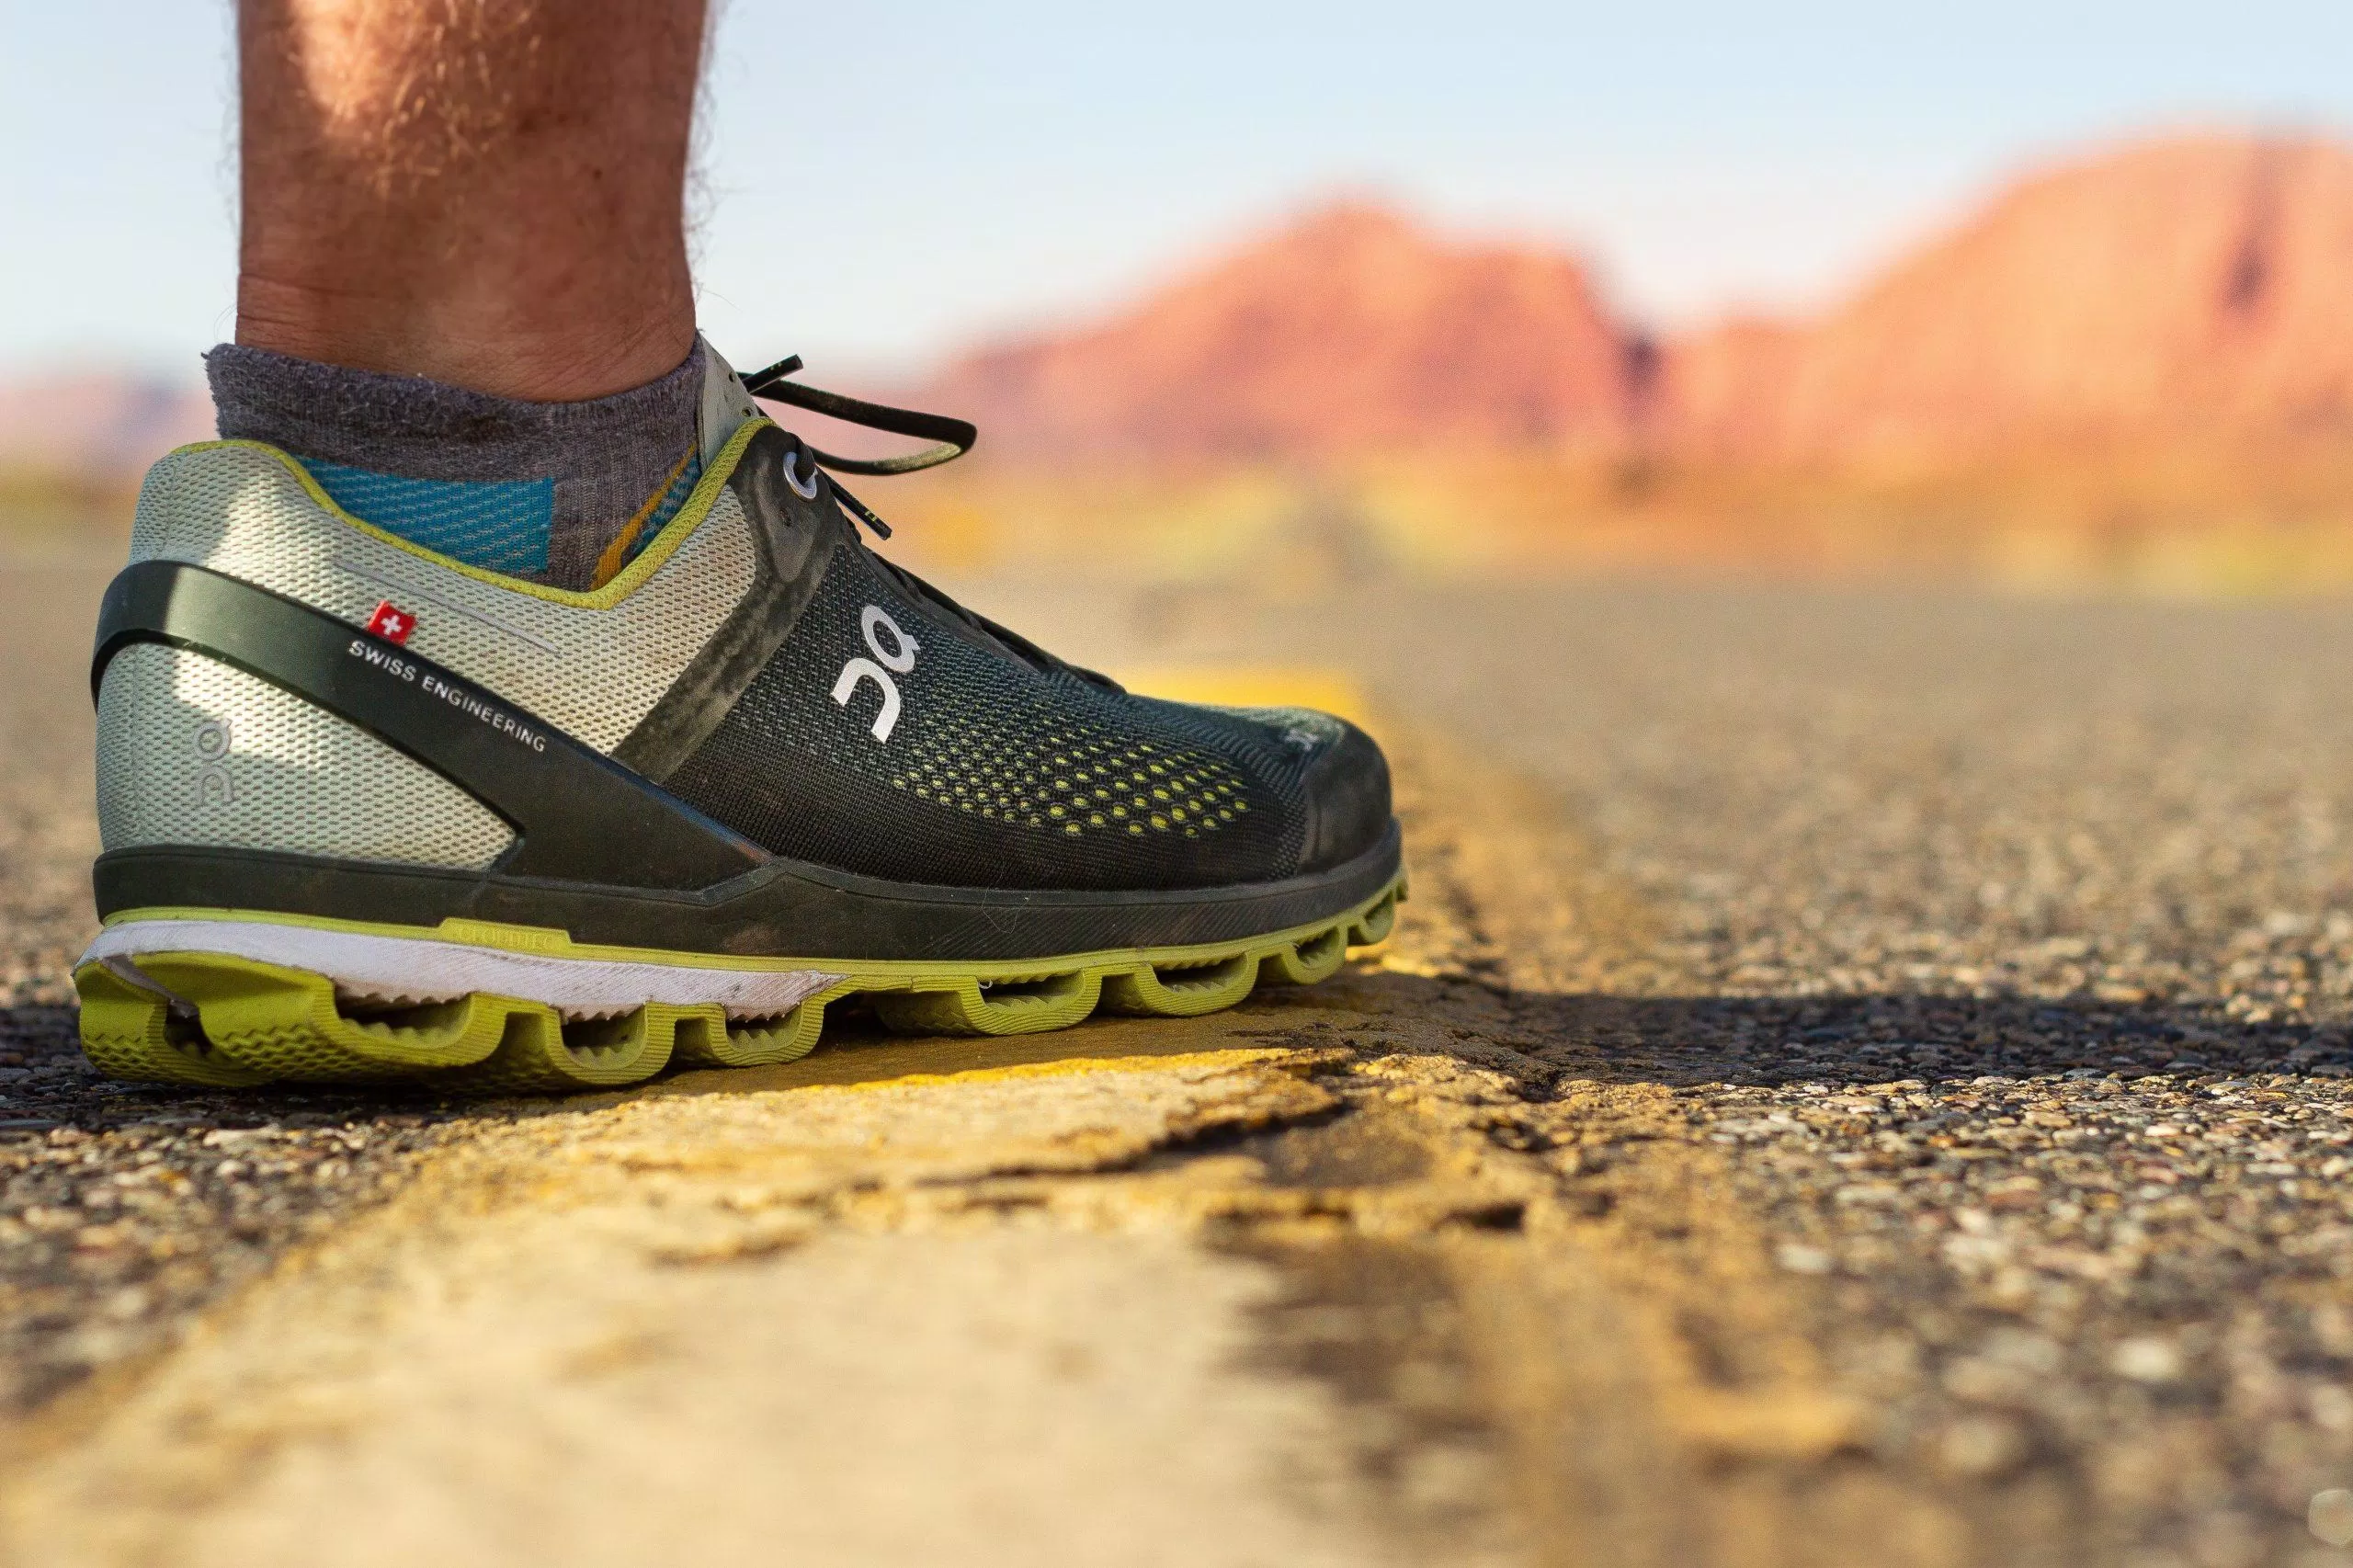 Đầu tư vào giày chạy bộ phù hợp có khả năng bám đường tốt và hỗ trợ mắt cá chân là rất quan trọng khi chạy địa hình. (Nguồn: Internet)